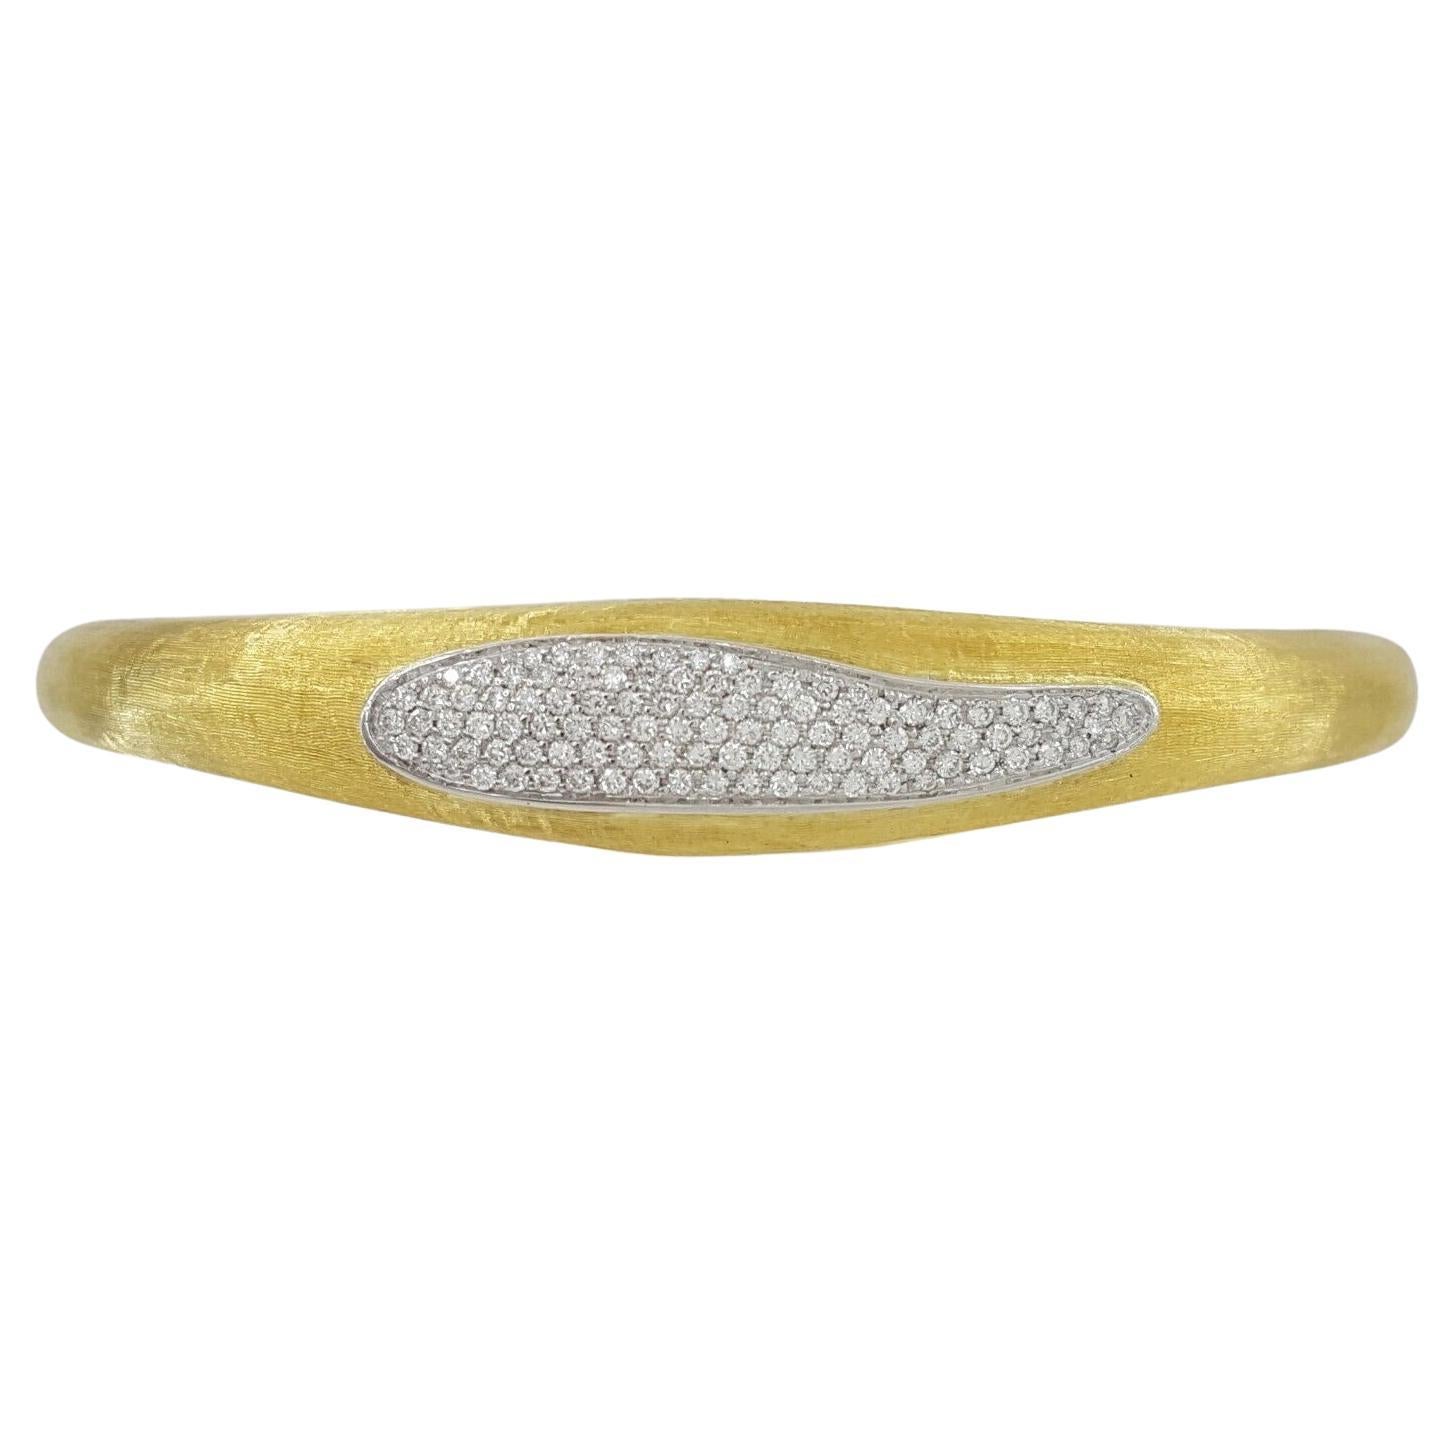 MarCo Bicego Pave Set Diamond 18k Yellow Gold Cuff Bangle